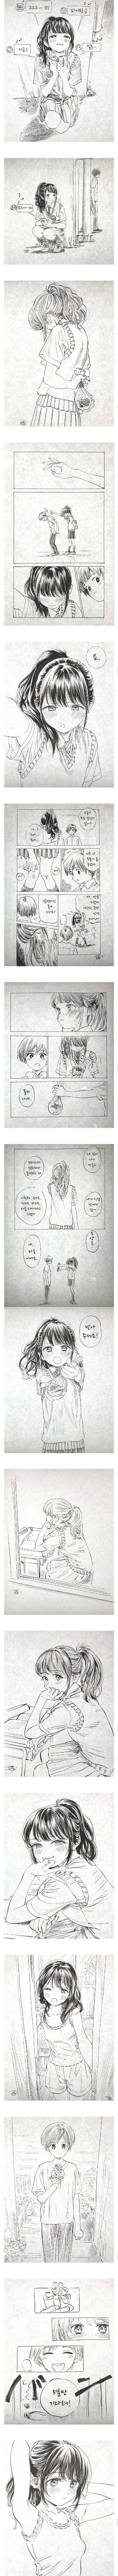 소녀의 도전.manga